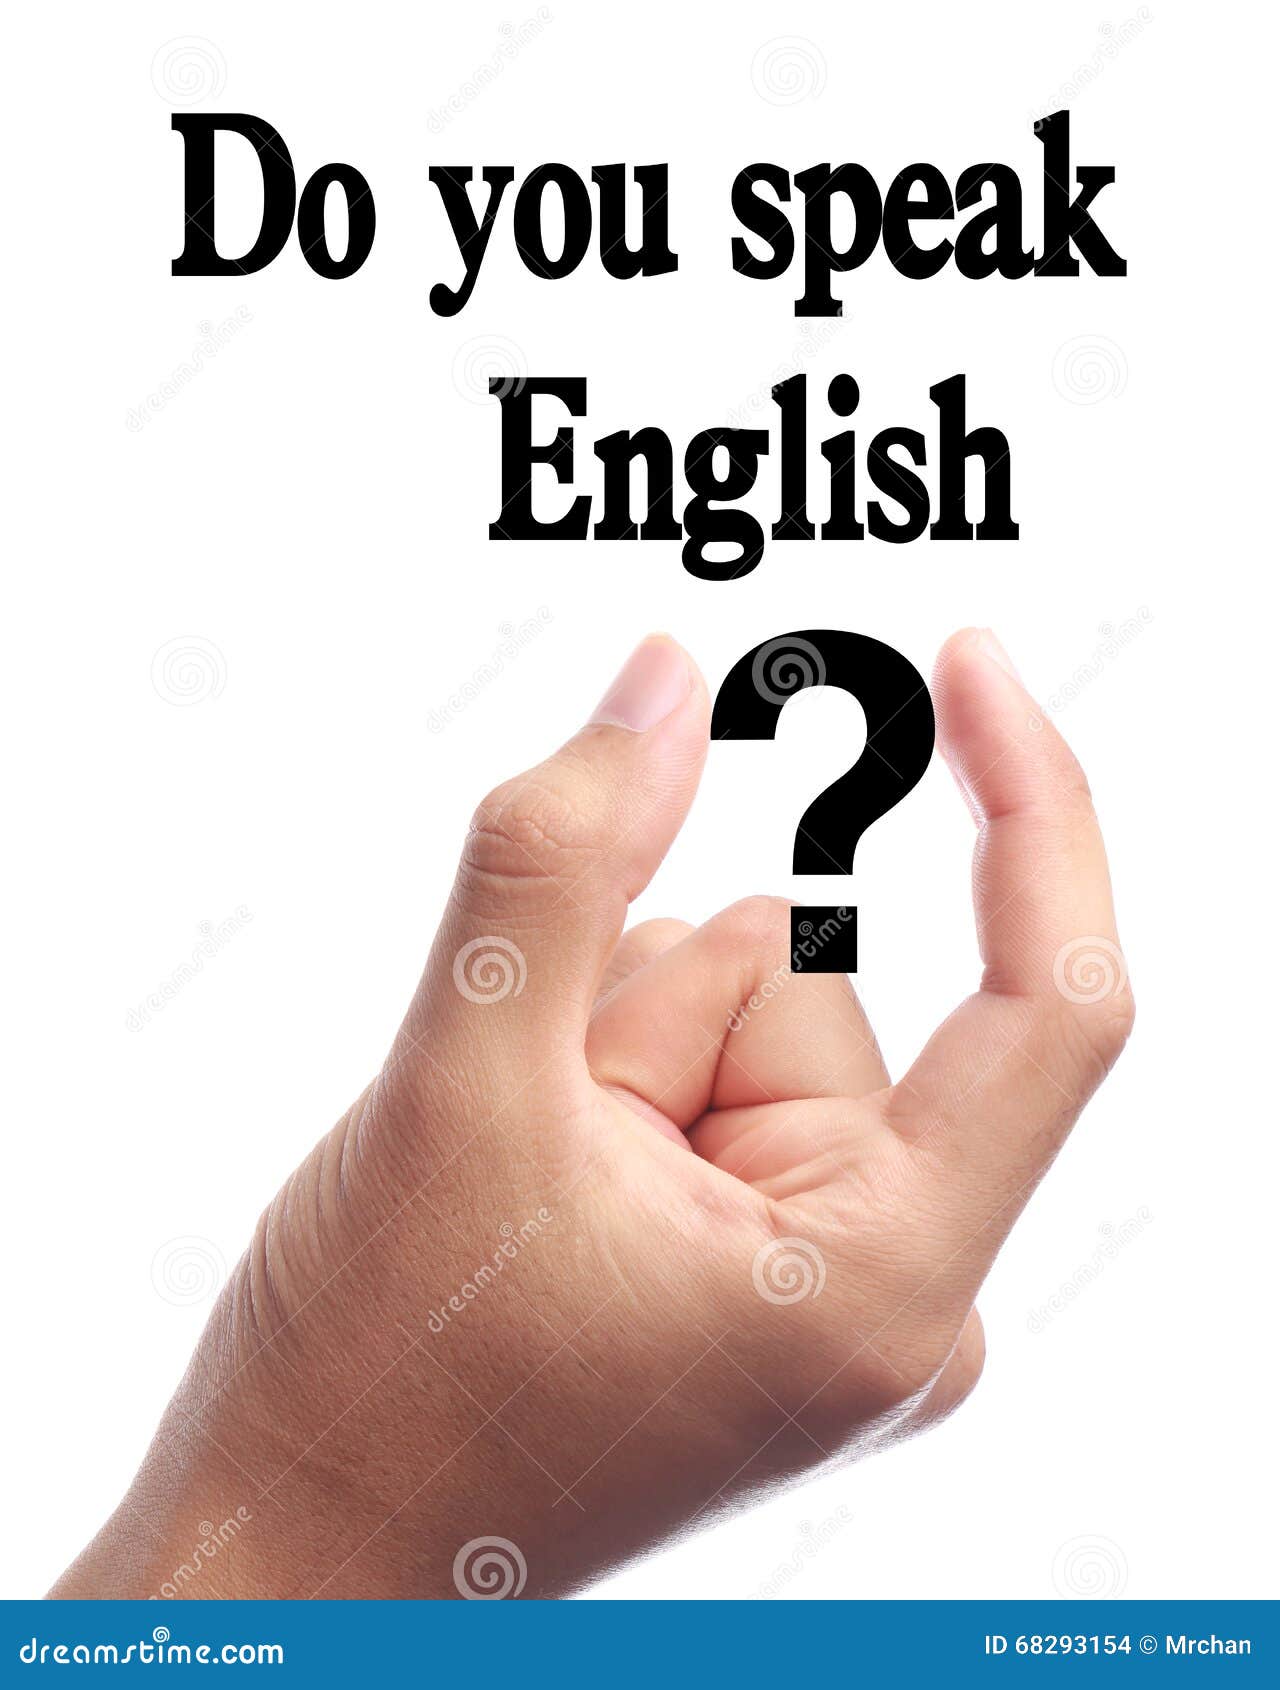 Do you speak good english. Do you speak English. Английский язык do you speak. Do you speak English надпись. Do you speak English ответ.